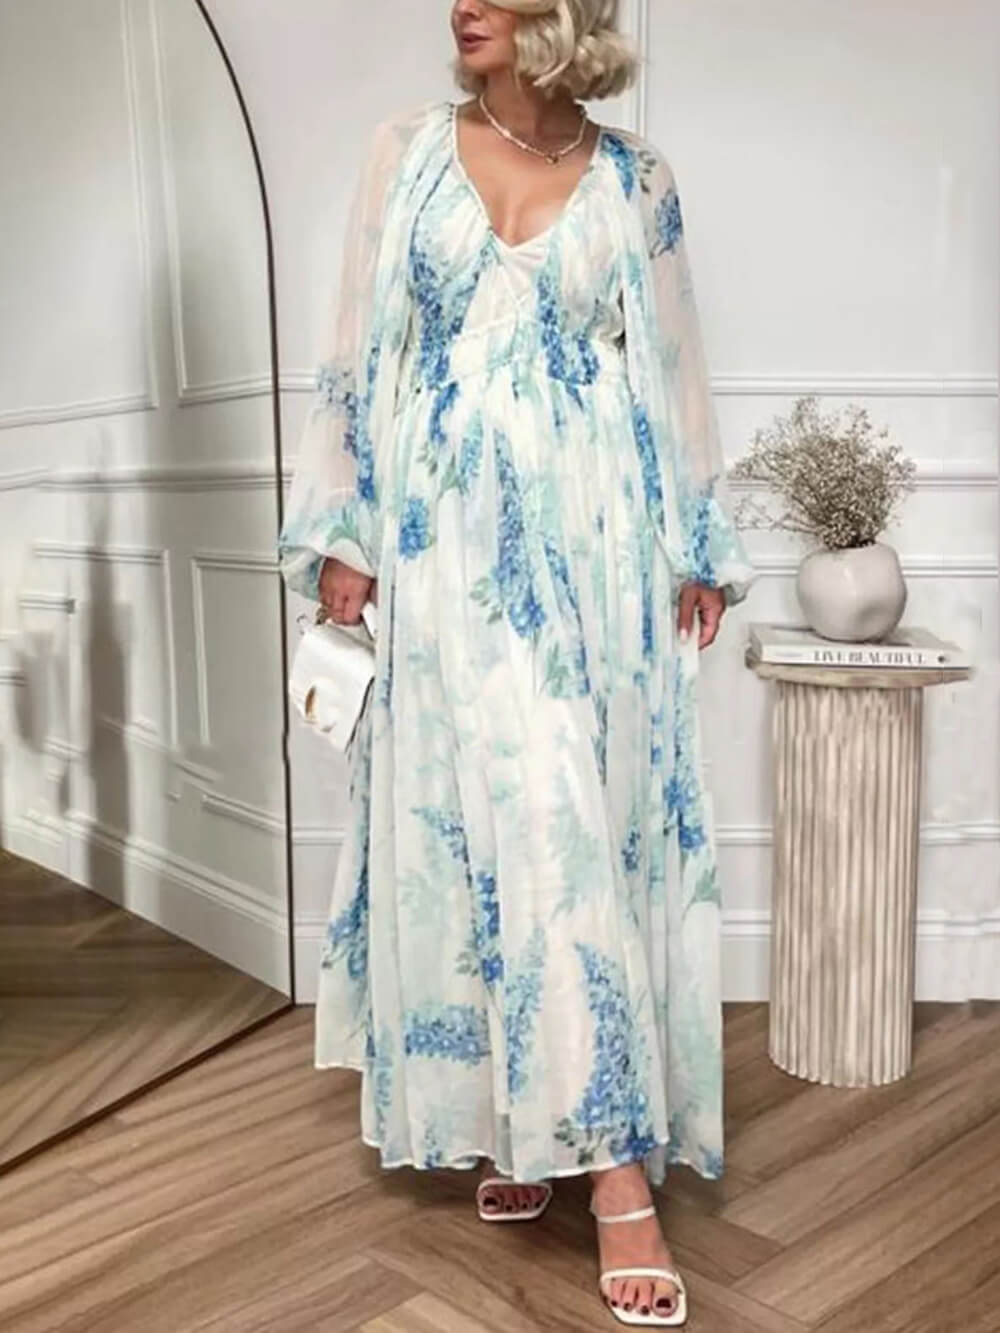 ओशियन फ्लावर शिफॉन फ्लोरल ड्रॉस्ट्रिंग कमर मैक्सी ड्रेस